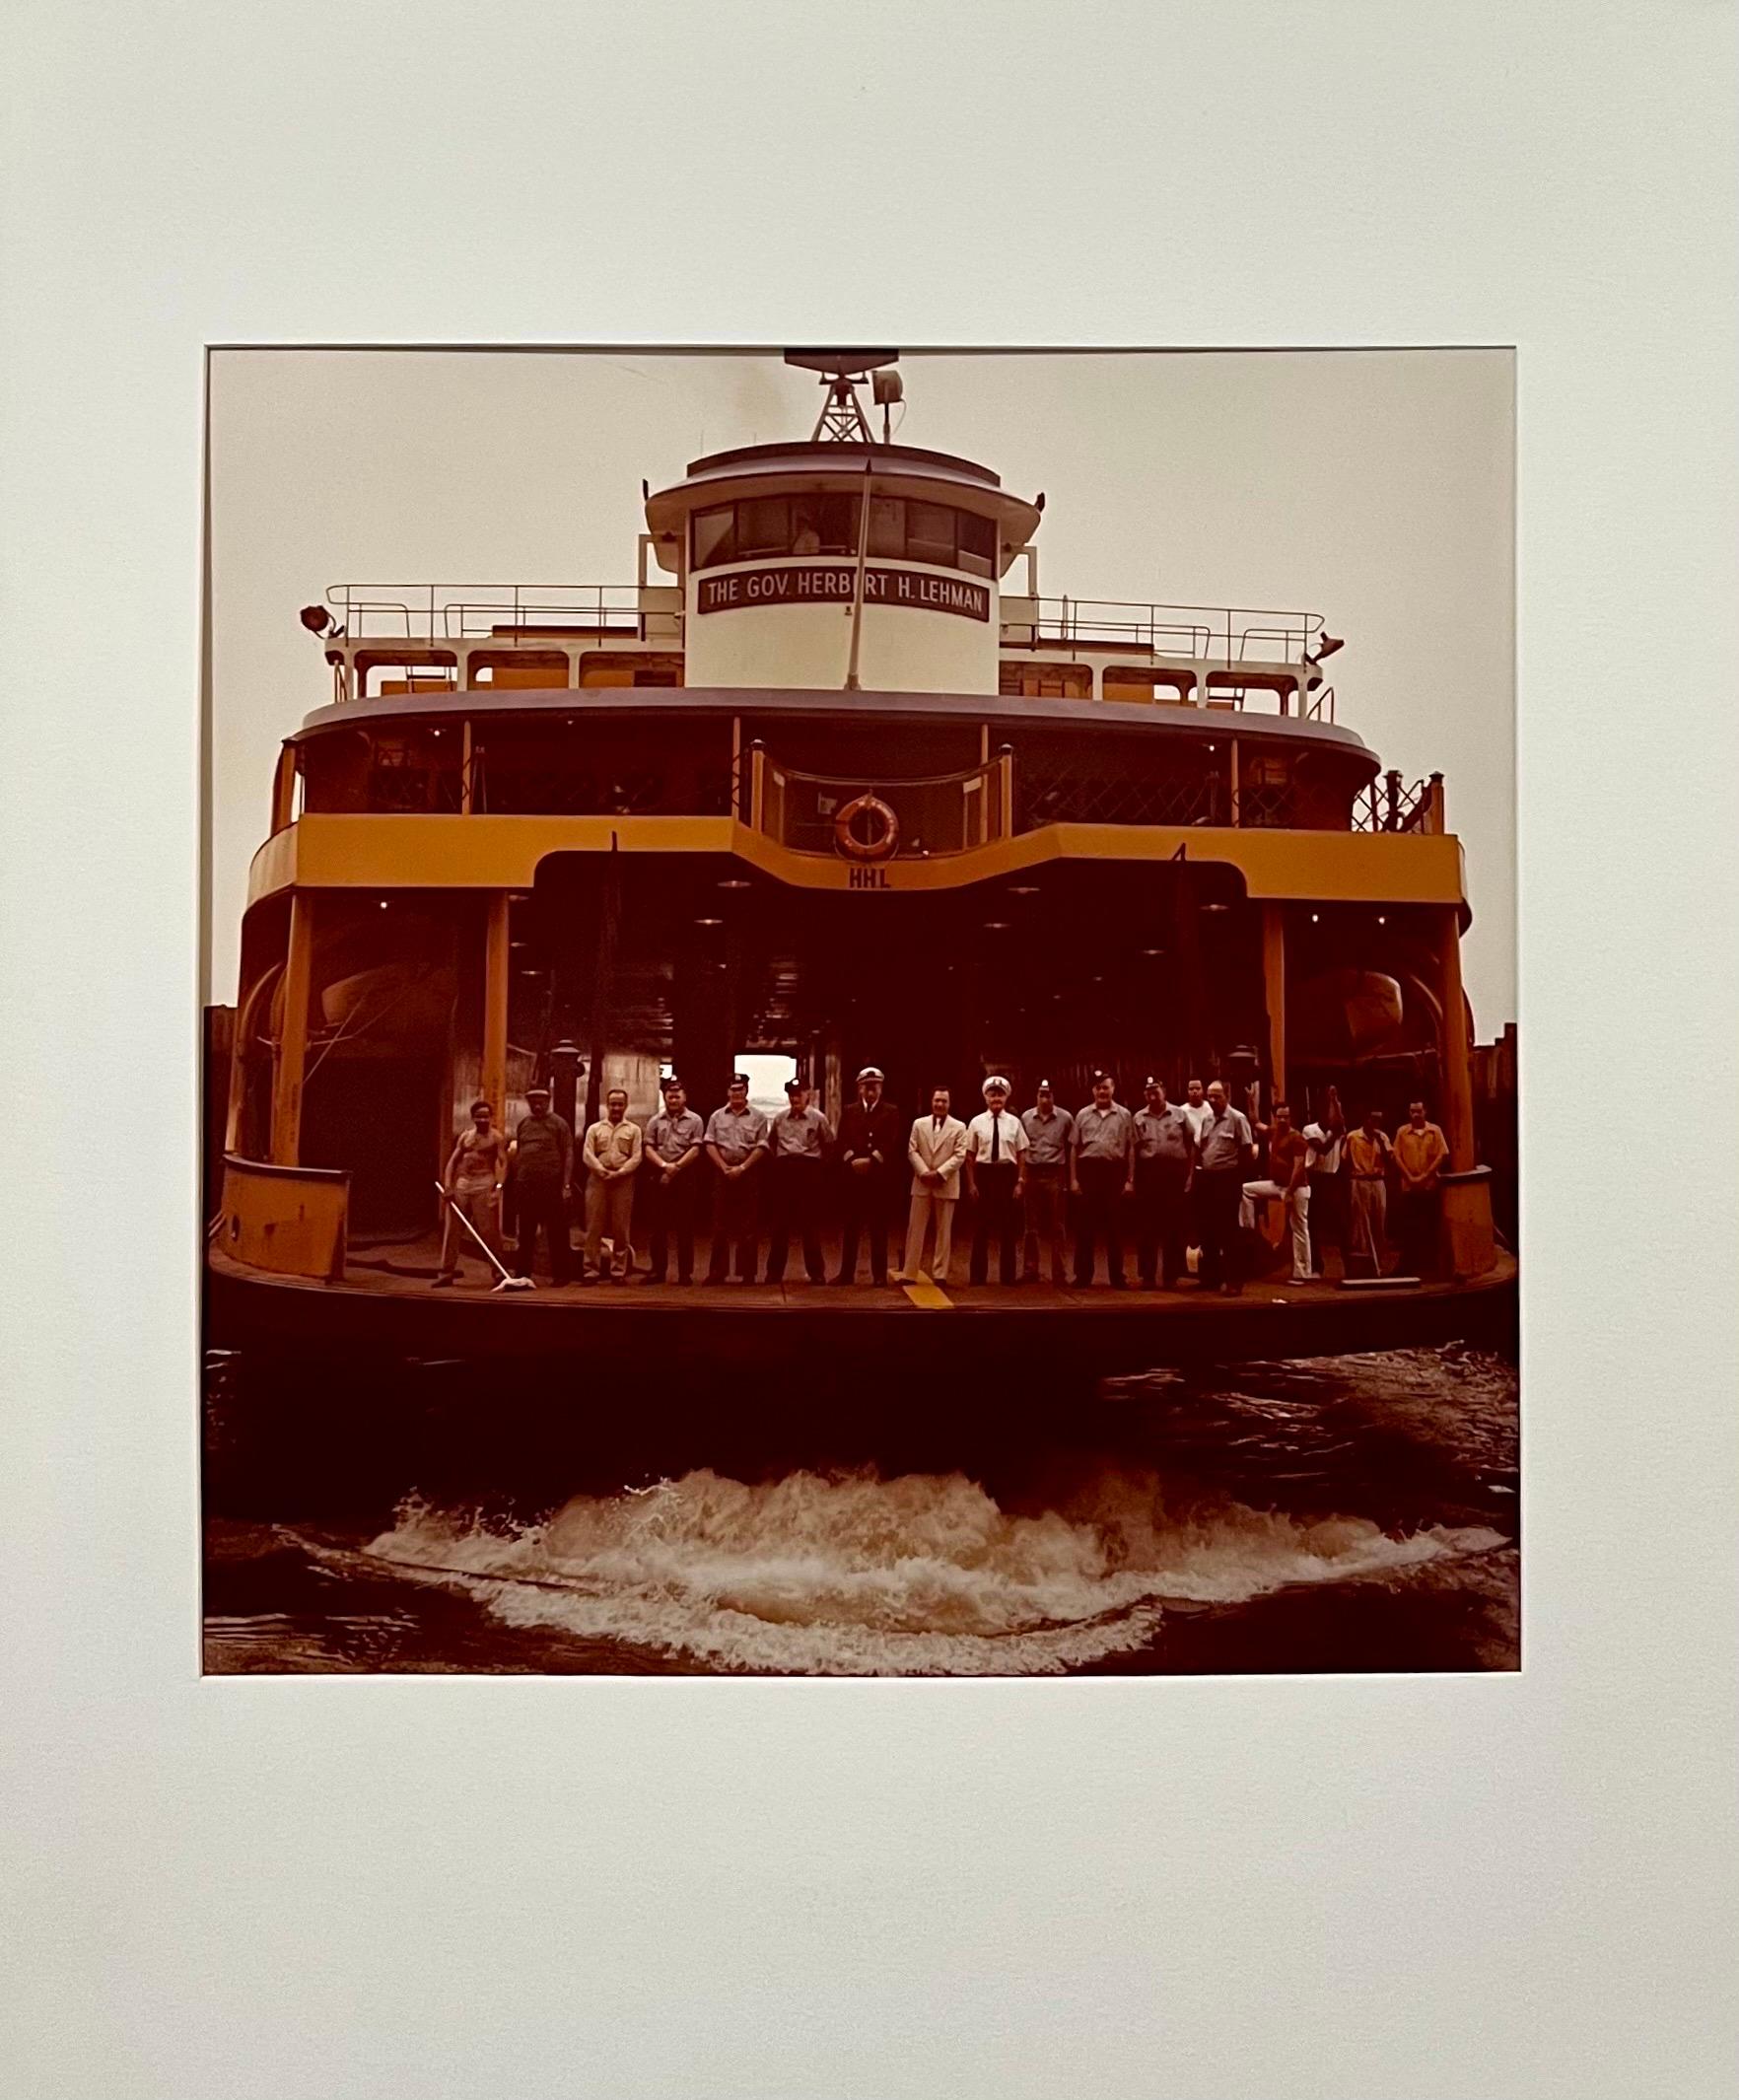 Neal Slavin (Amerikaner, geb. 1941)
Staten Island Fähre Crew
Vintage C-print [Chromogener Entwicklungsabzug; Ektacolor-Abzüge]
Vom Fotografen handsigniert und nummeriert 48/75
Fotos mit einer 2,25 x 2,25 Hasselblad-Kamera und einer 4 x 5